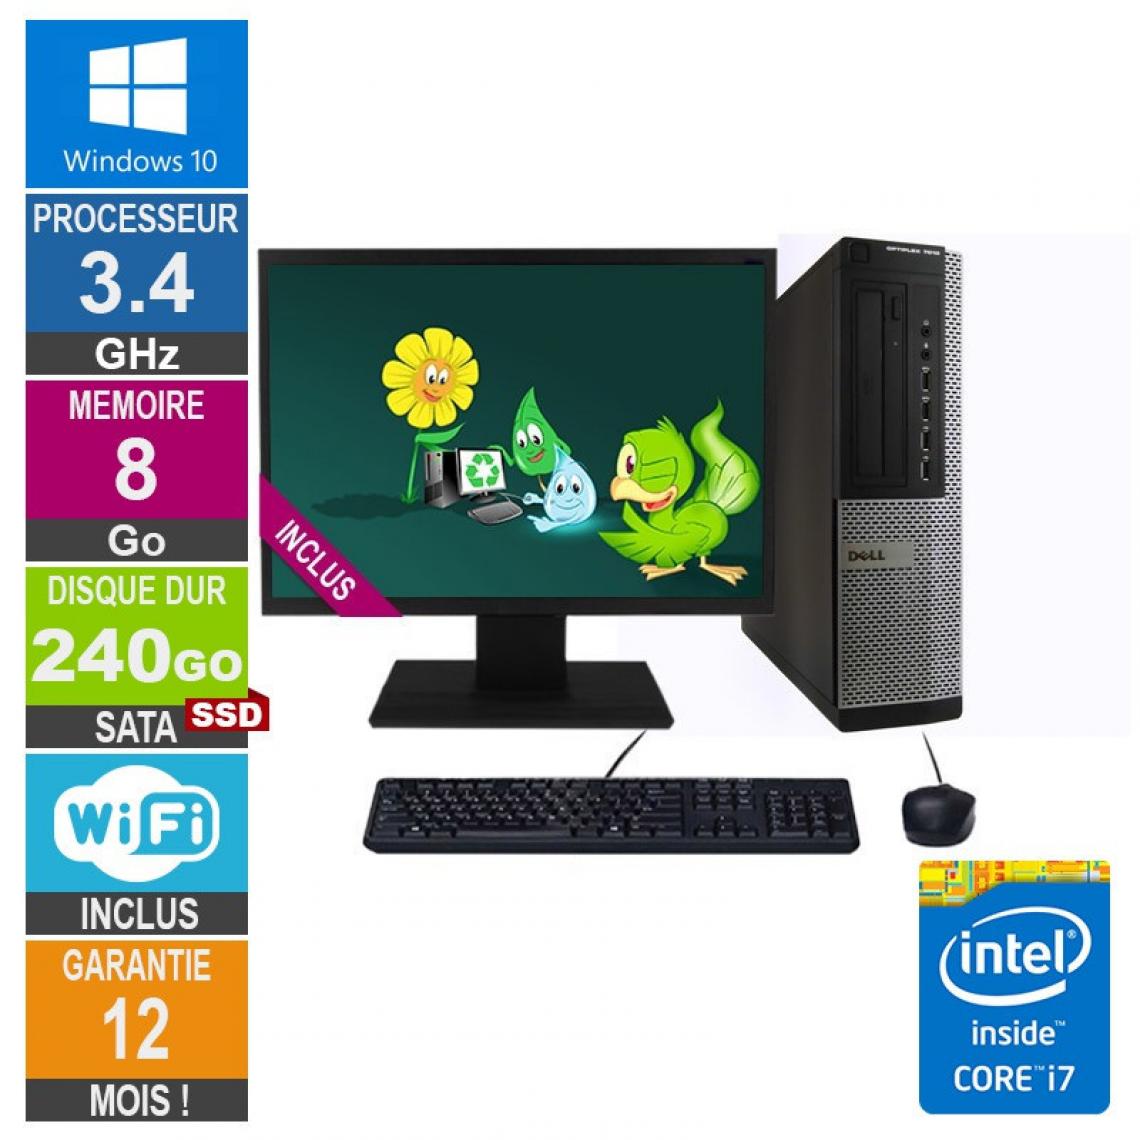 Dell - PC Dell 7010 DT Core i7-3770 3.40GHz 8Go/240Go SSD Wifi W10 + Ecran 19 - PC Fixe